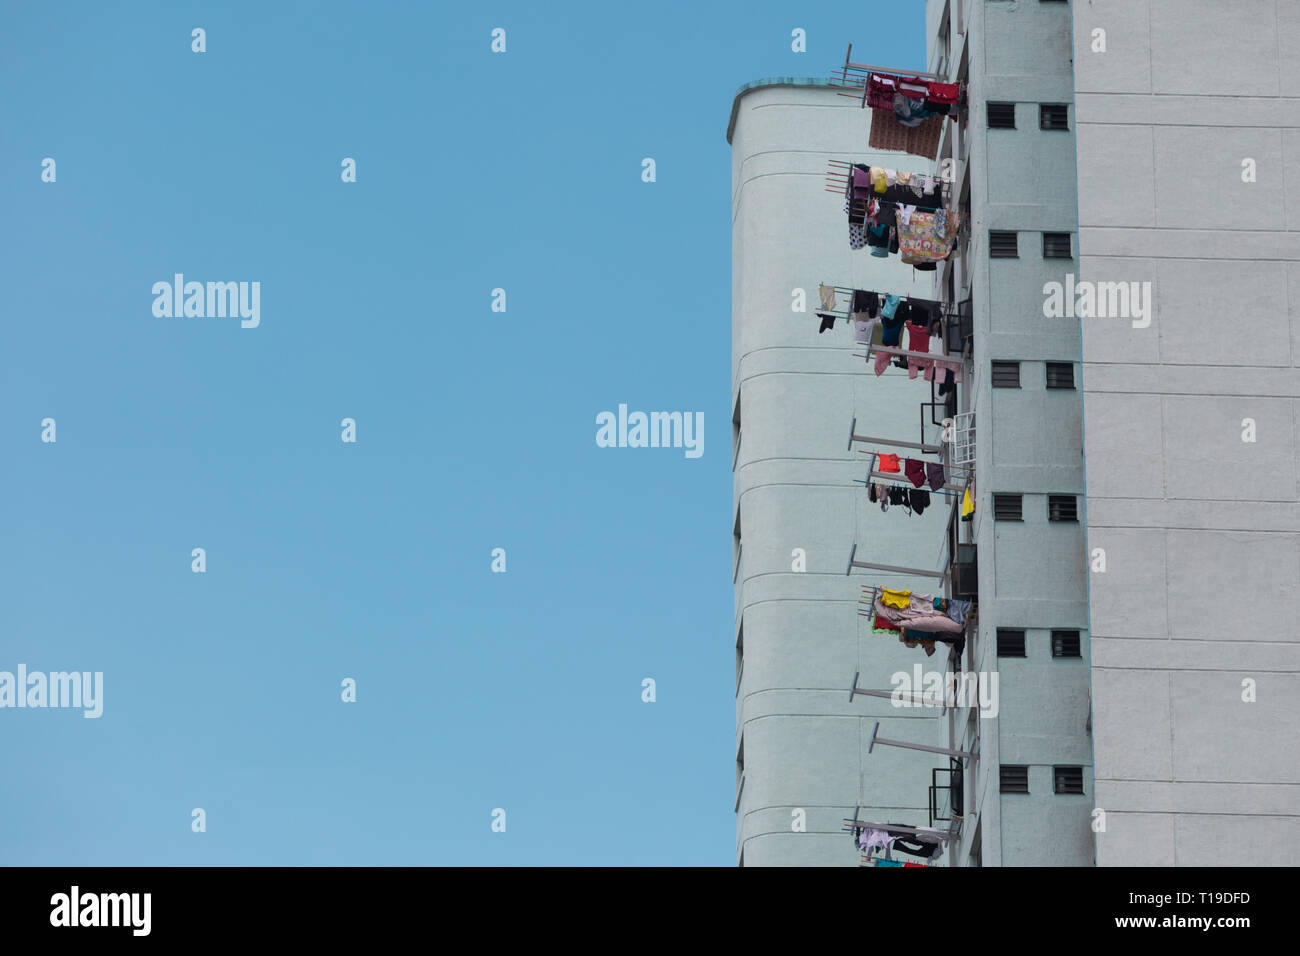 Hi-Gebäude in Singapur mit einer Waschmaschine hanging out Stockfoto